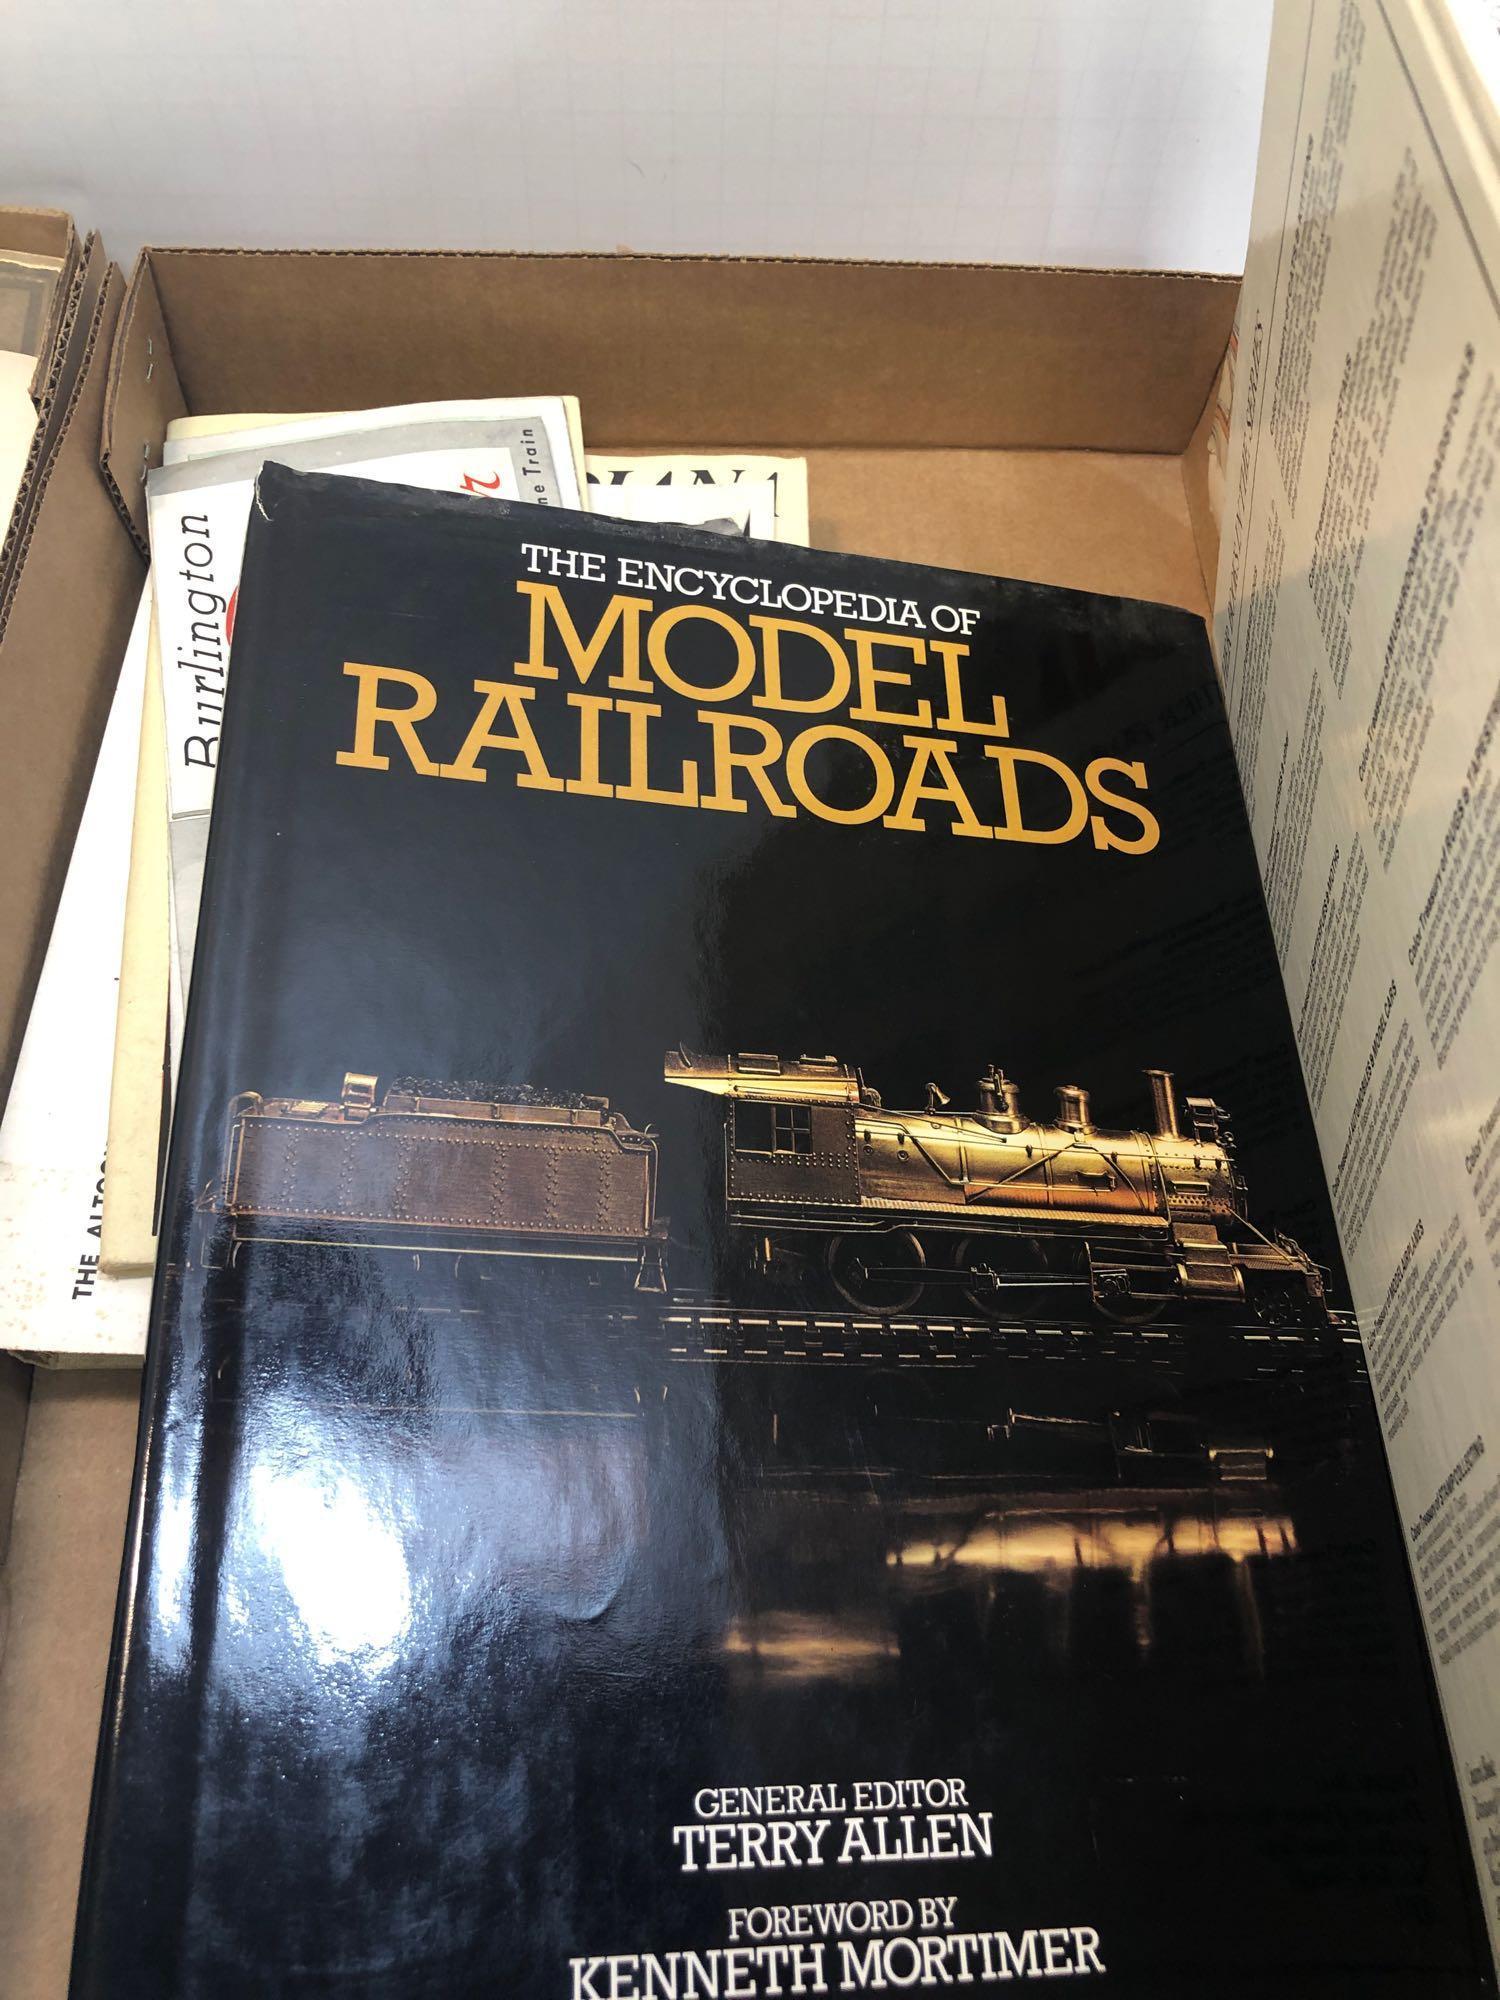 Railroad memorabilia